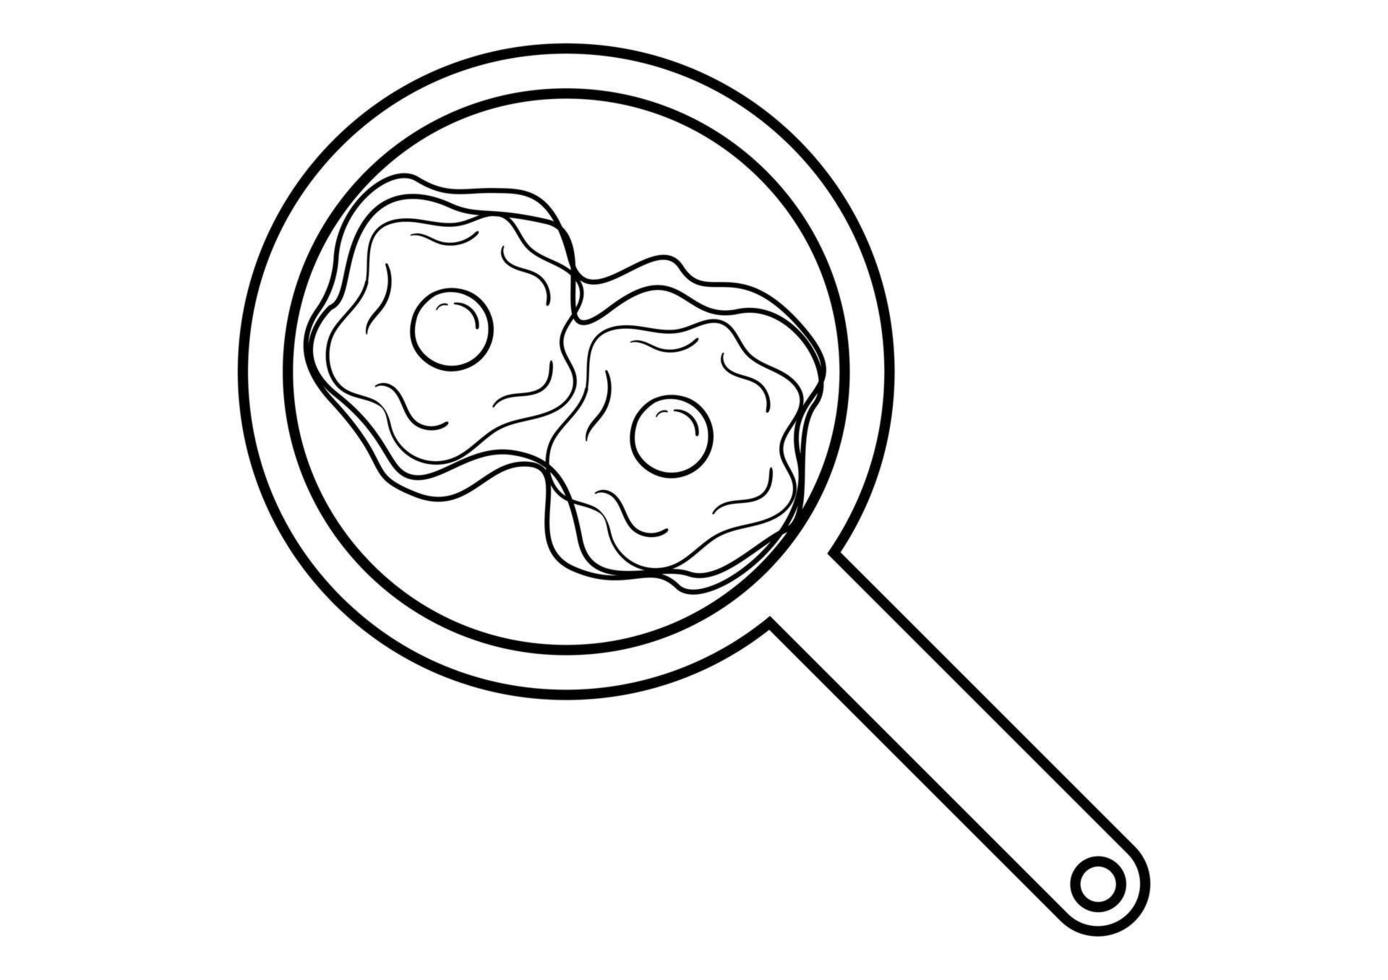 dibujado a mano ilustración de huevo de ojo de vaca en una sartén vector